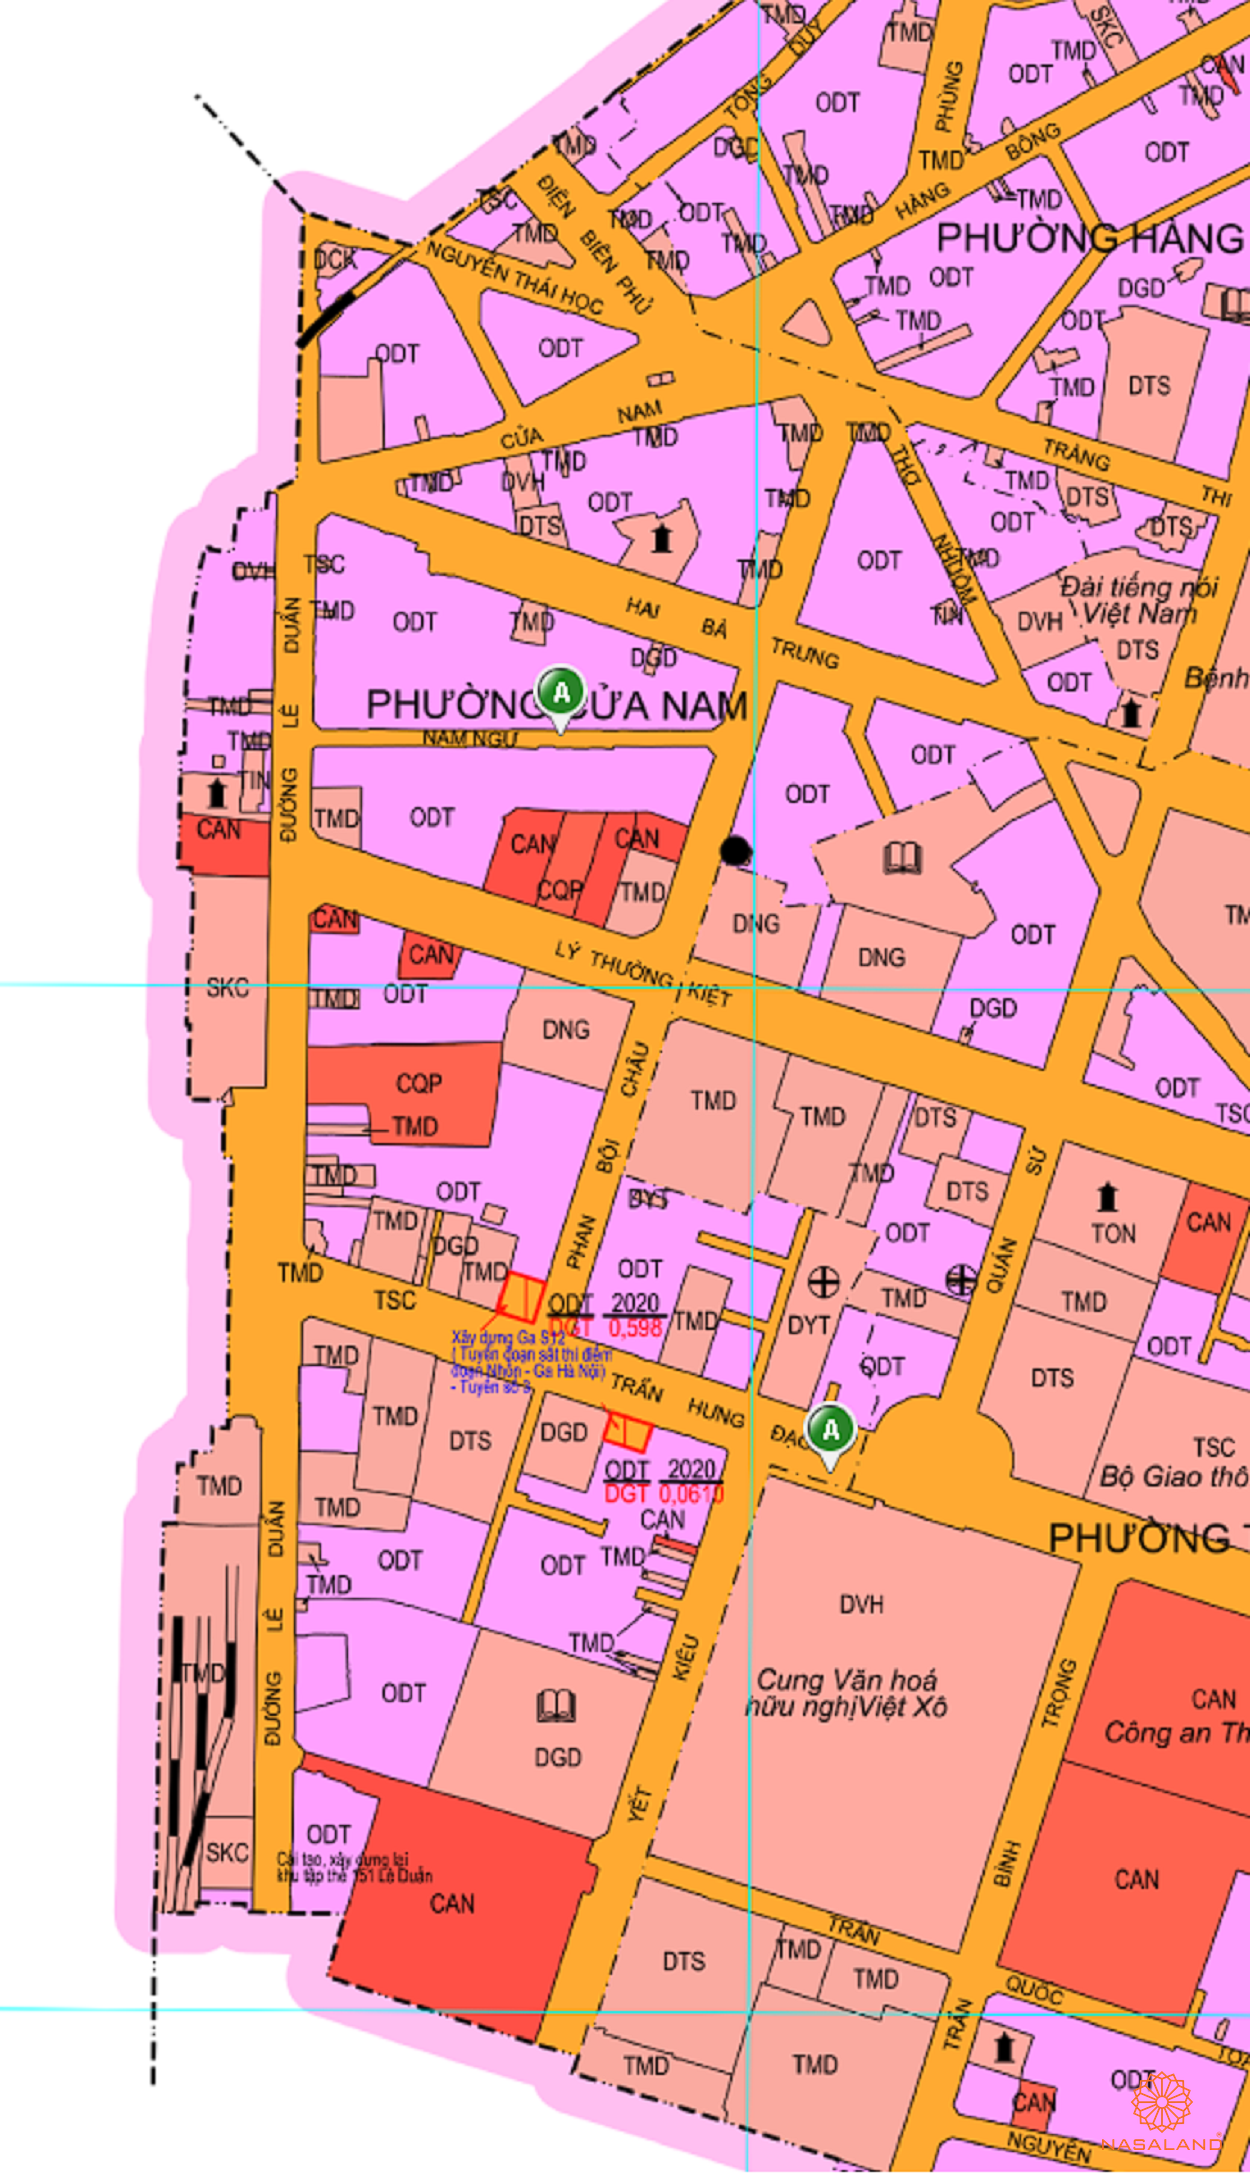 Bản đồ quy hoạch sử dụng đất Phường Cửa Nam theo bản đồ quy hoạch sử dụng đất năm 2020 Quận Hoàn Kiếm, Thành phố Hà Nội.